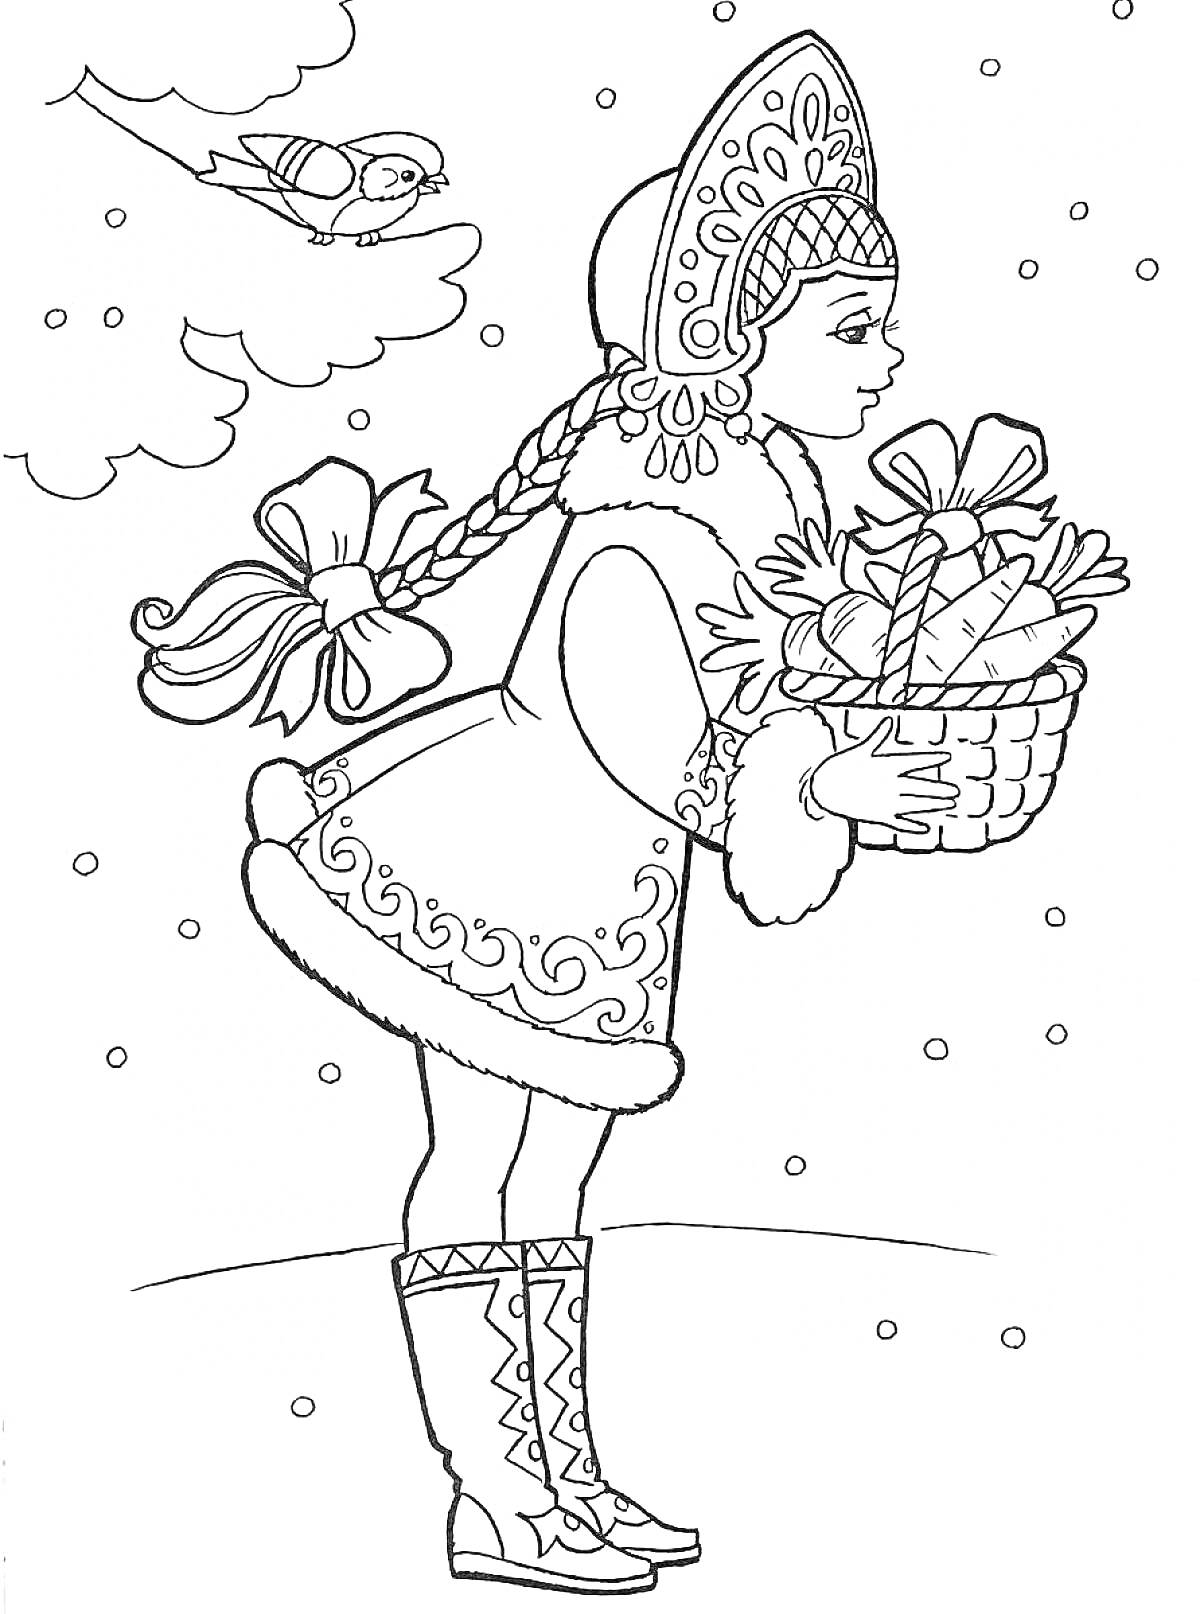 Снегурочка в зимней одежде с корзиной подарков, снегири на ветке, падающий снег